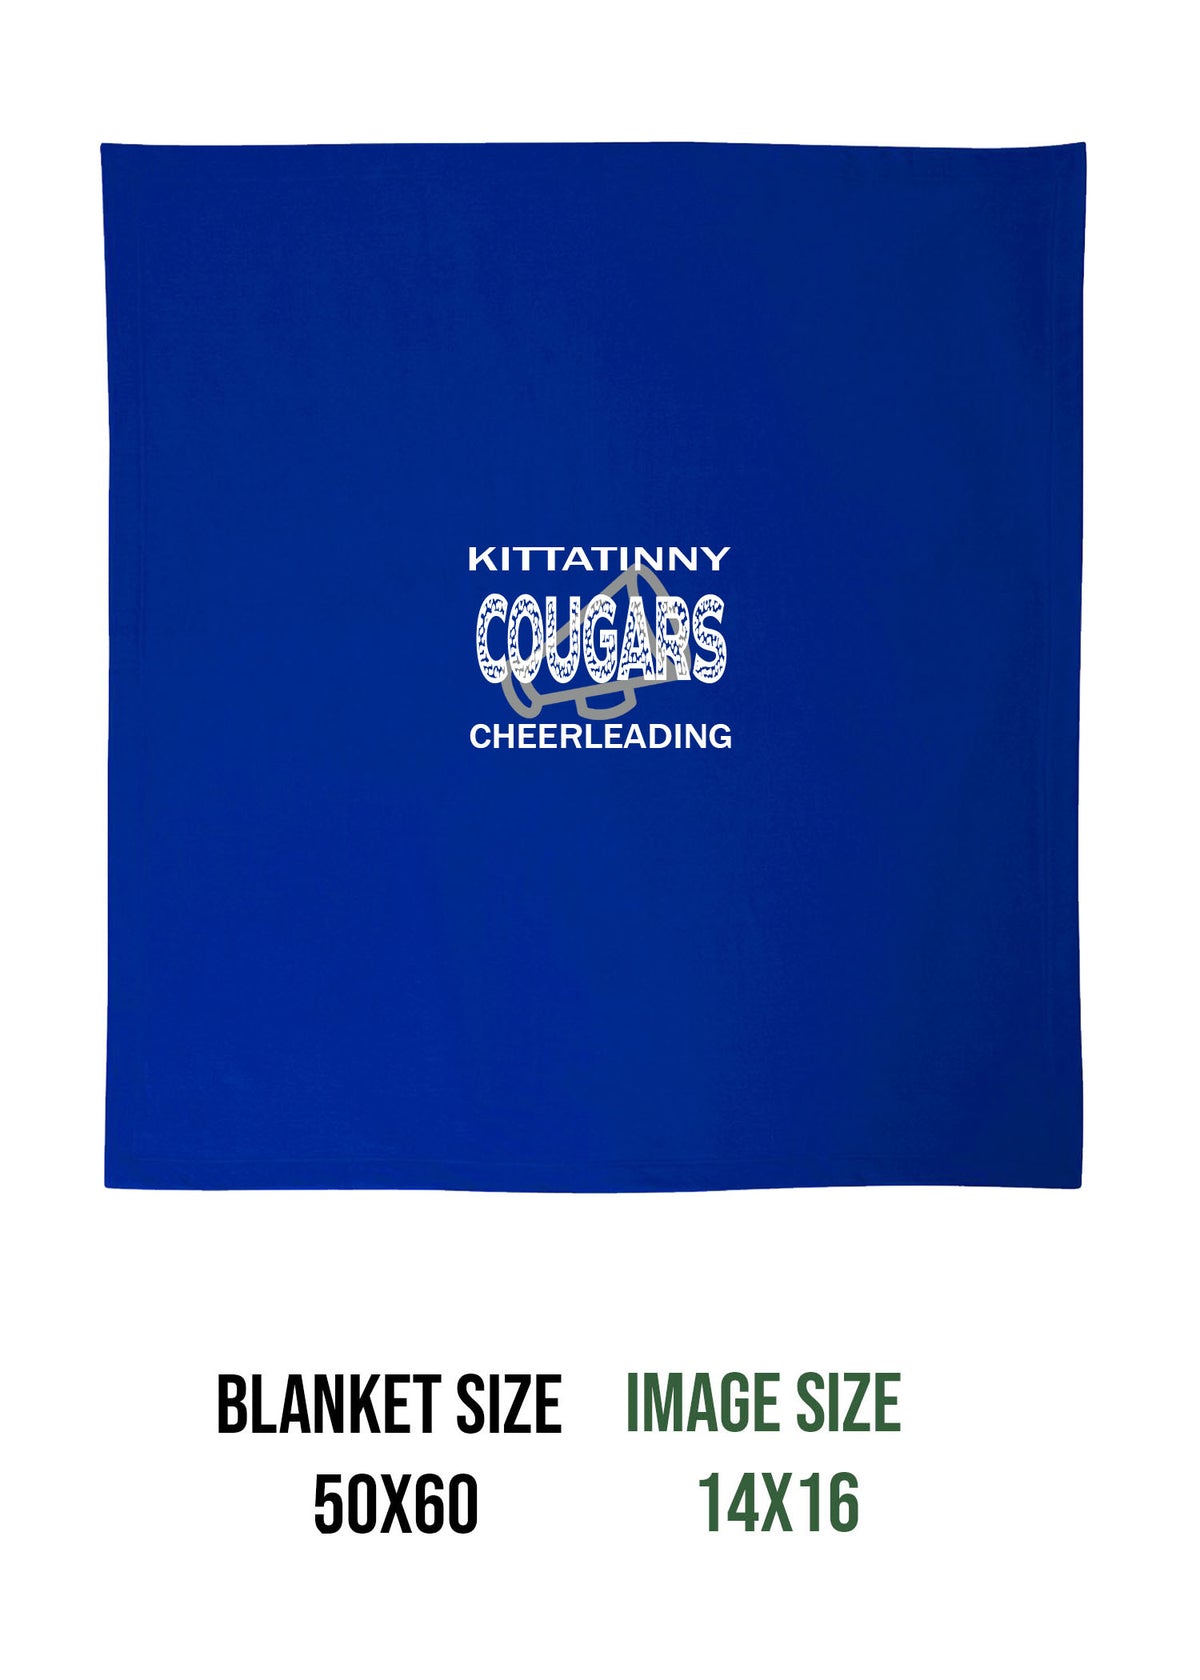 Kittatinny Cheer Design 10 Blanket